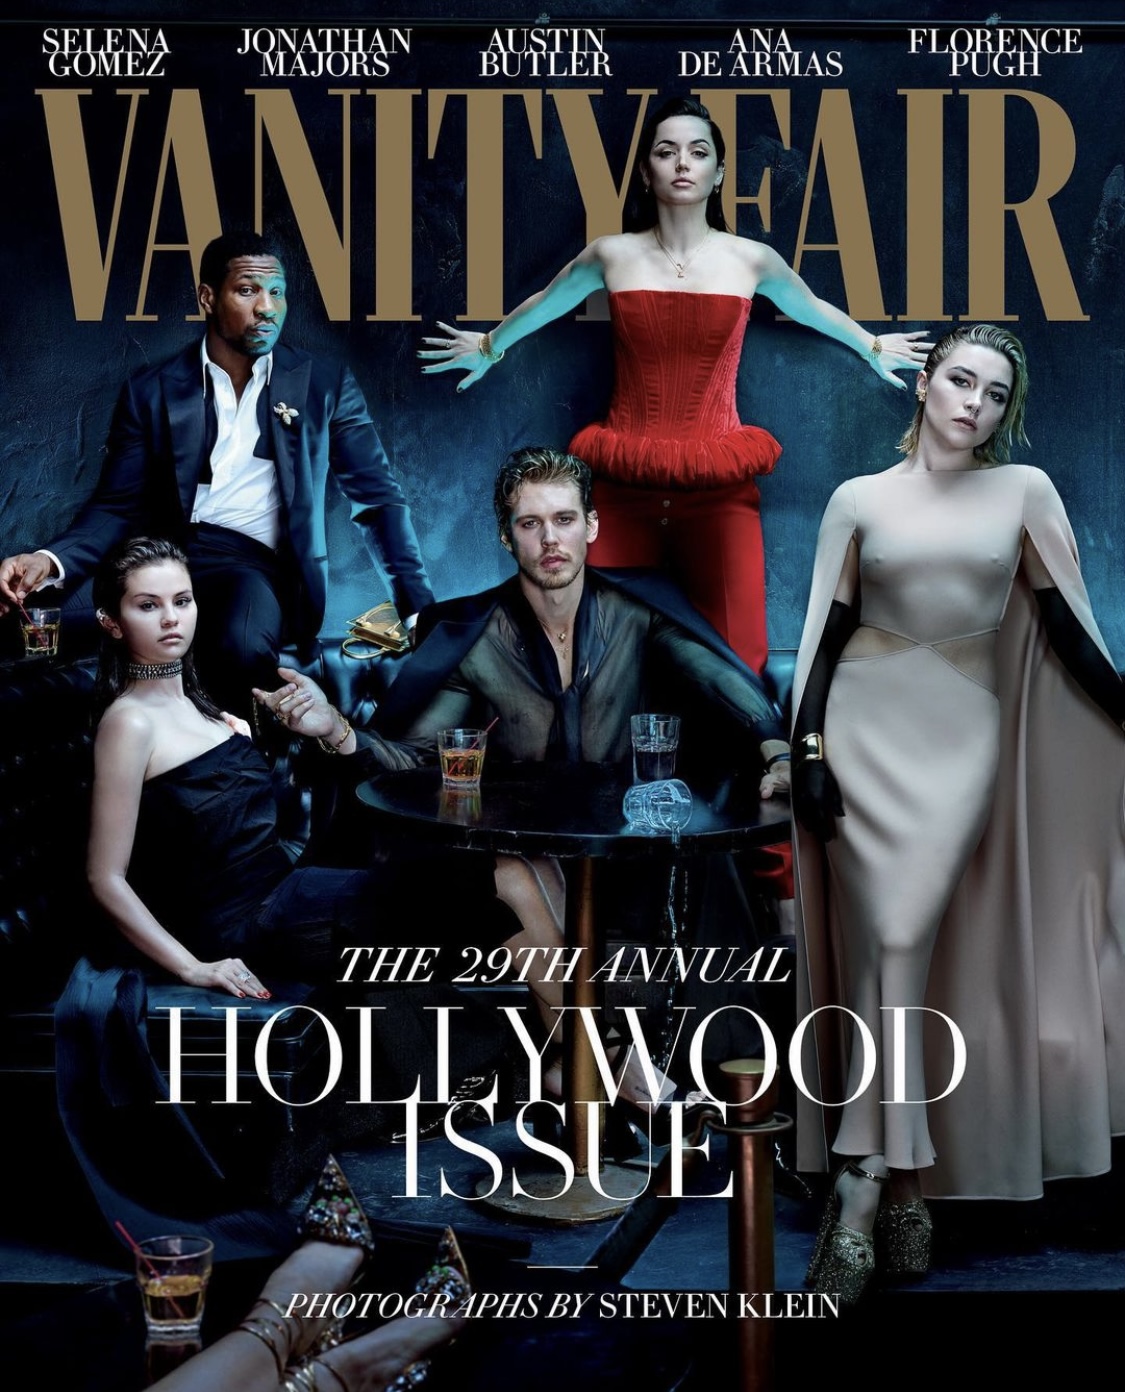 Vanity Fair March 2020 Cover (Vanity Fair U.S.)